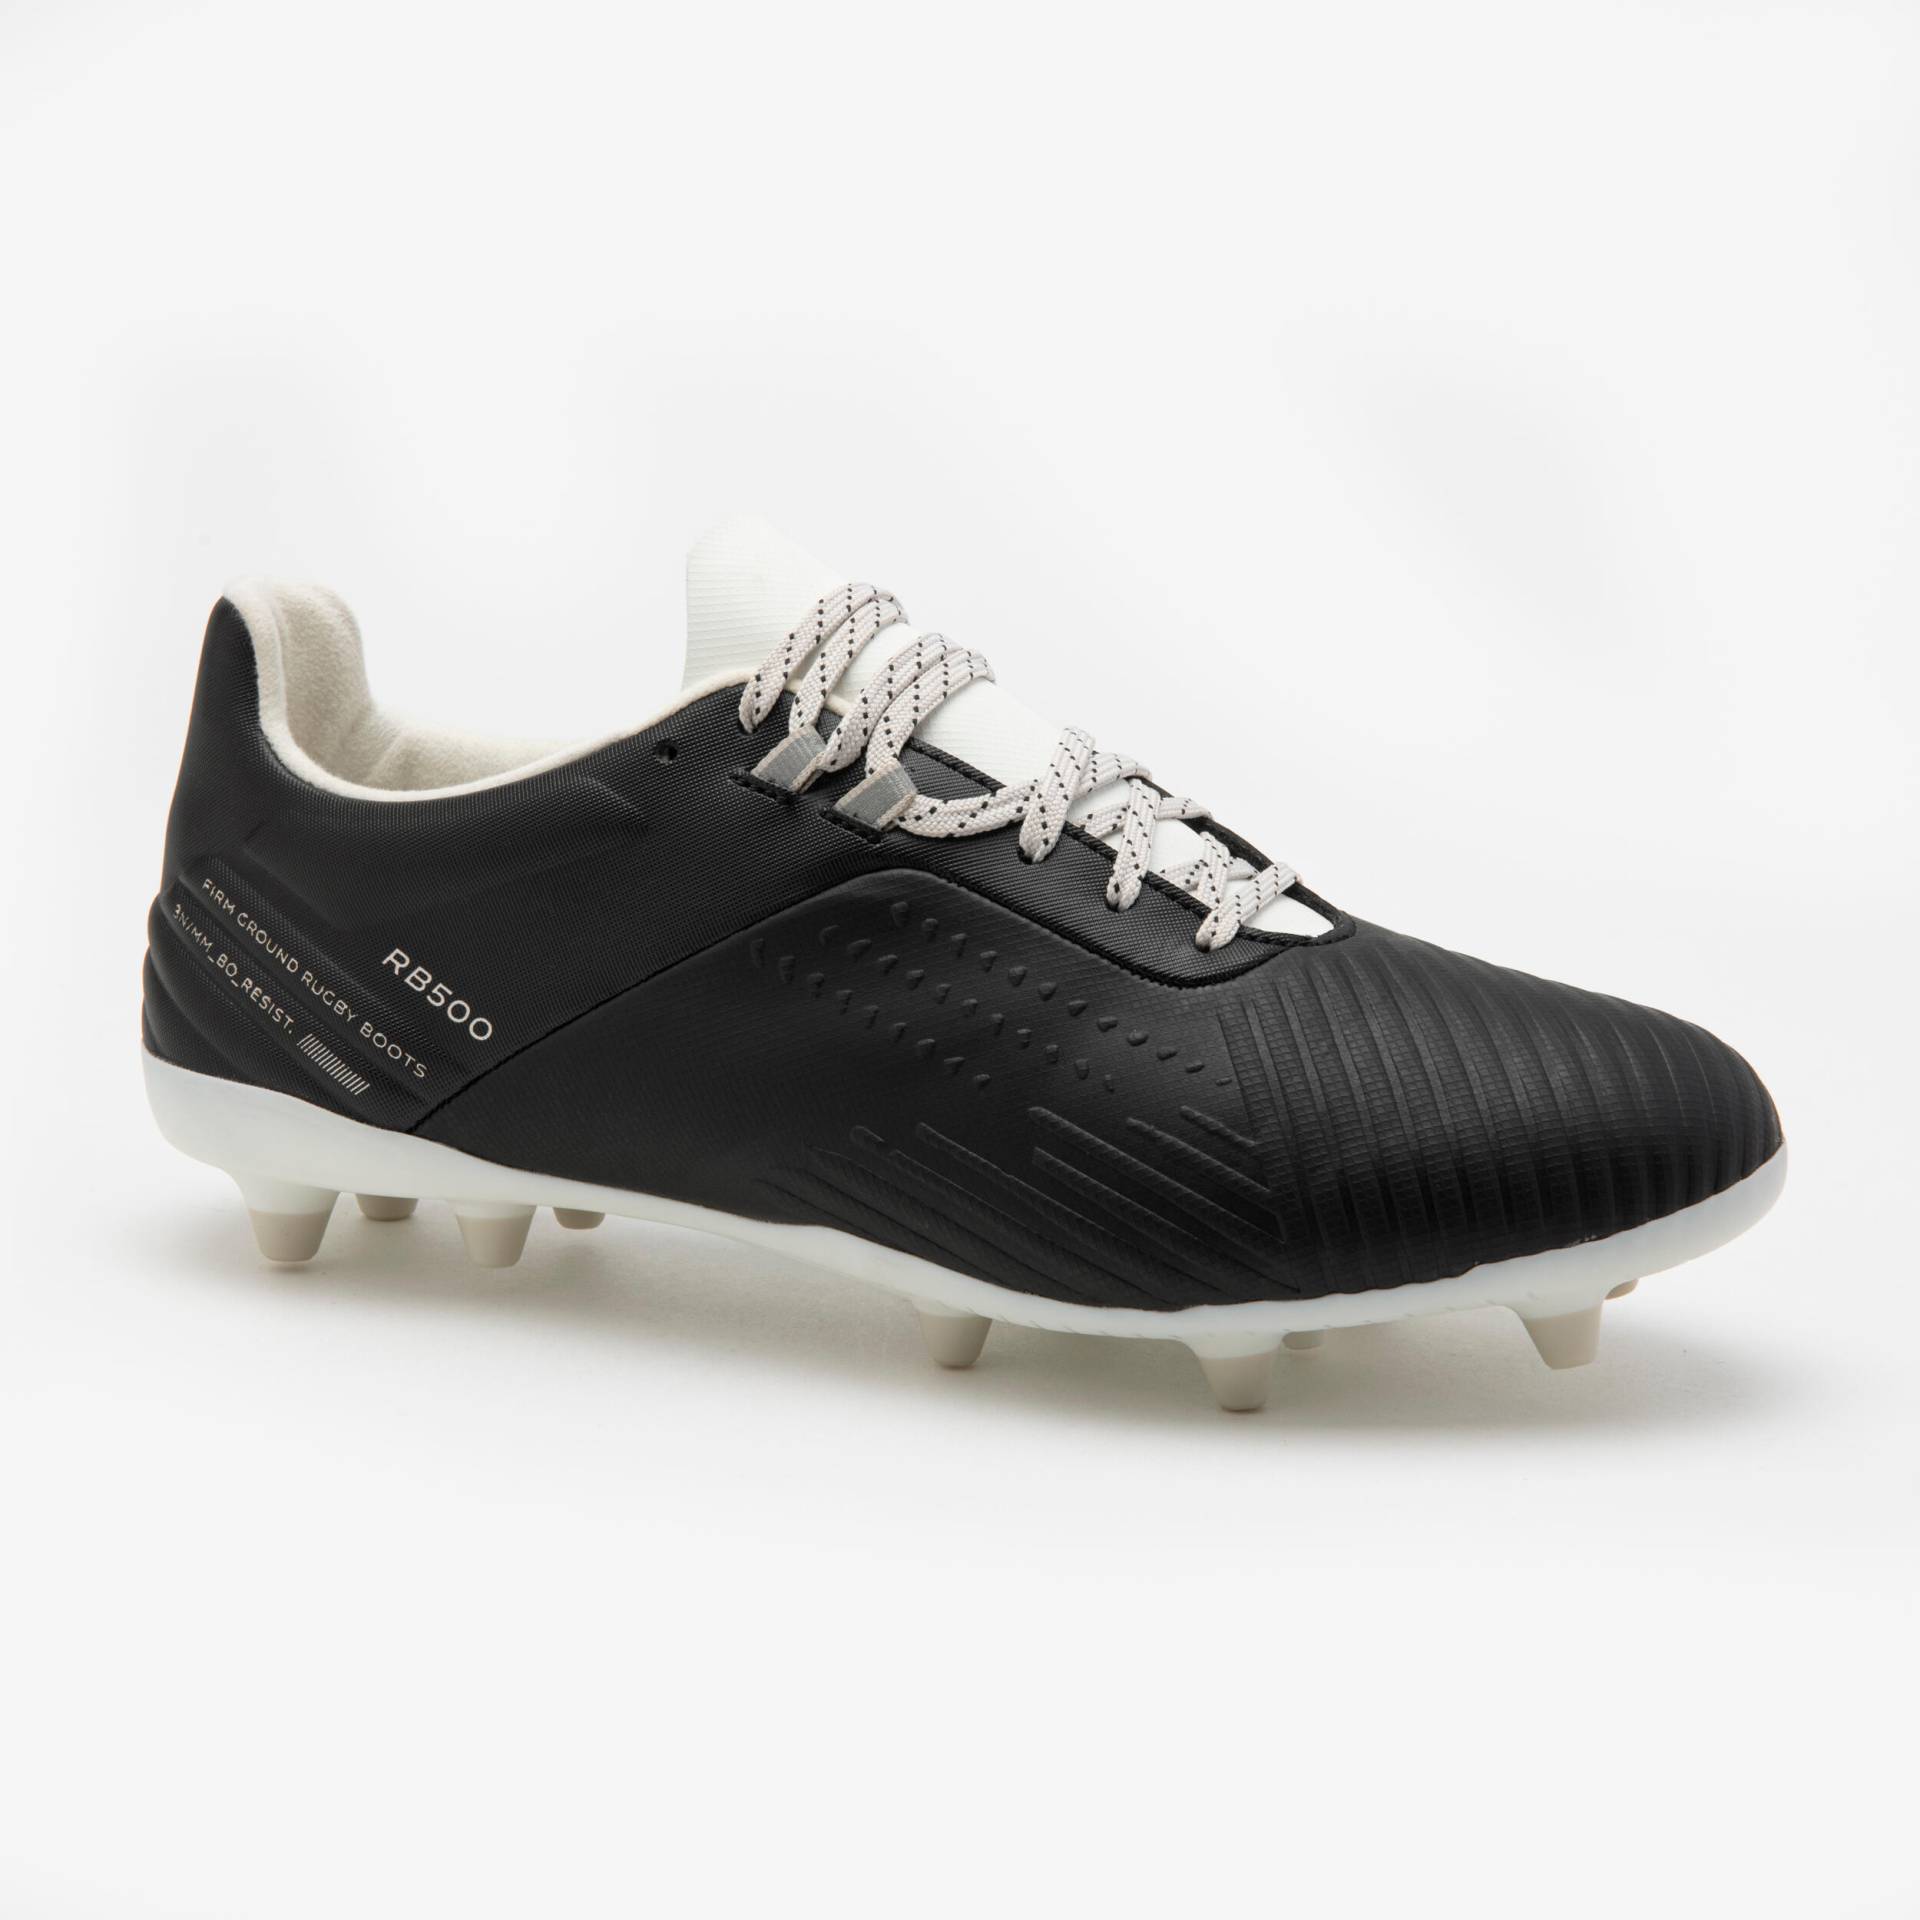 Damen/Herren Rugby Schuhe FG - Advance R500 schwarz von OFFLOAD